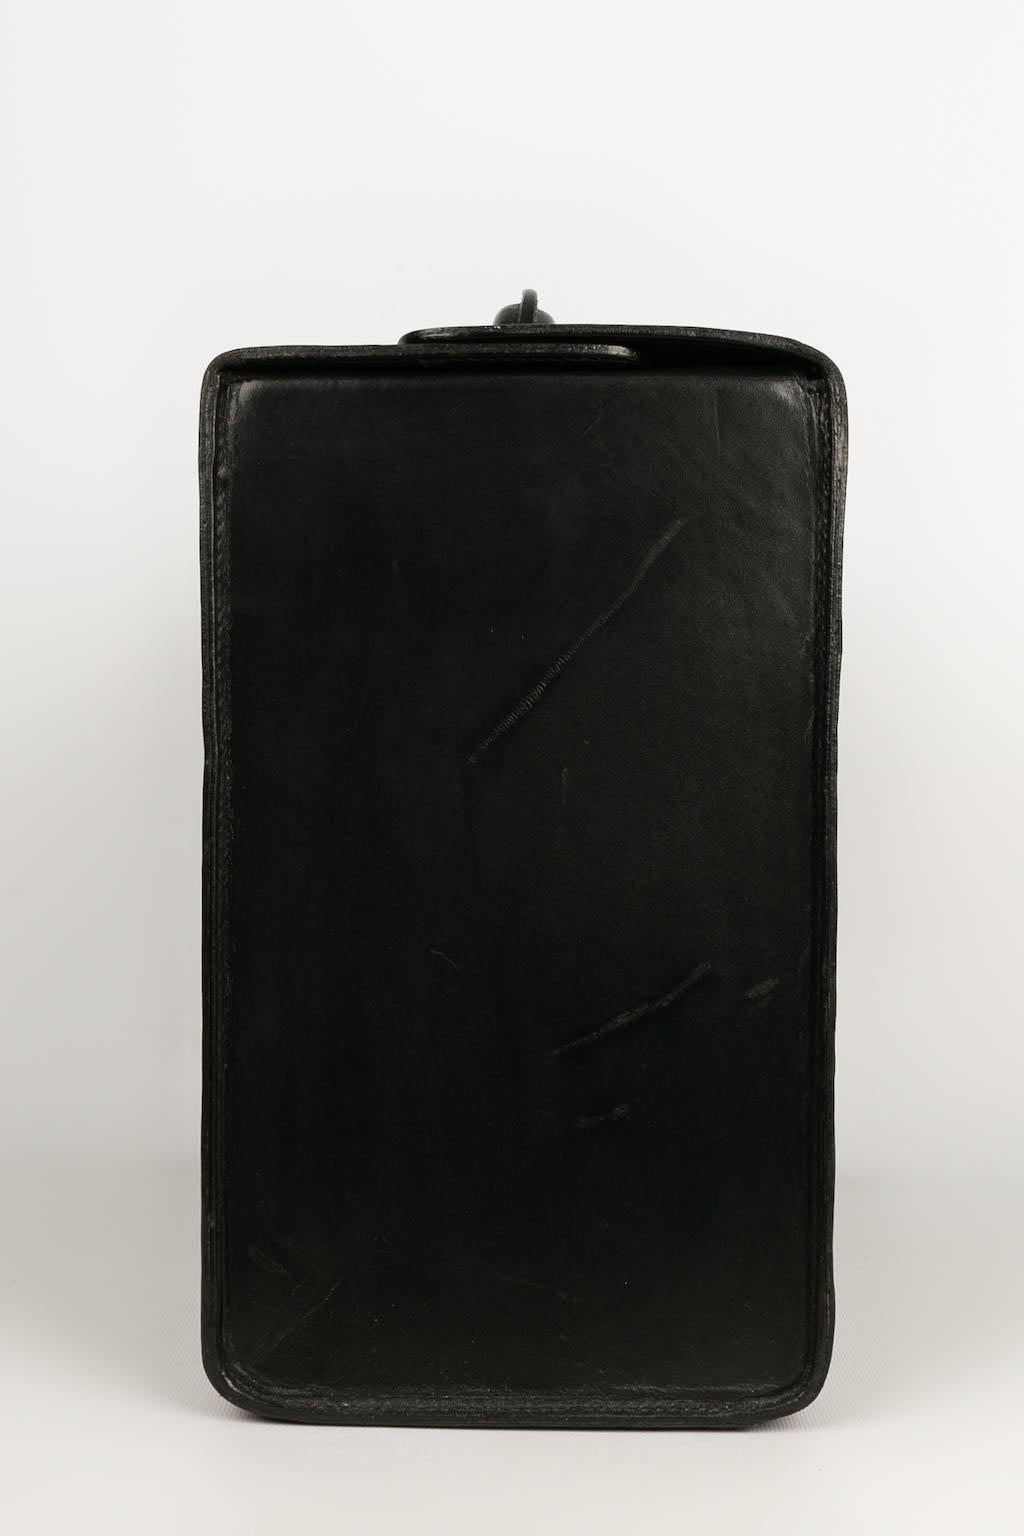 Goyard Black Leather Briefcase 1